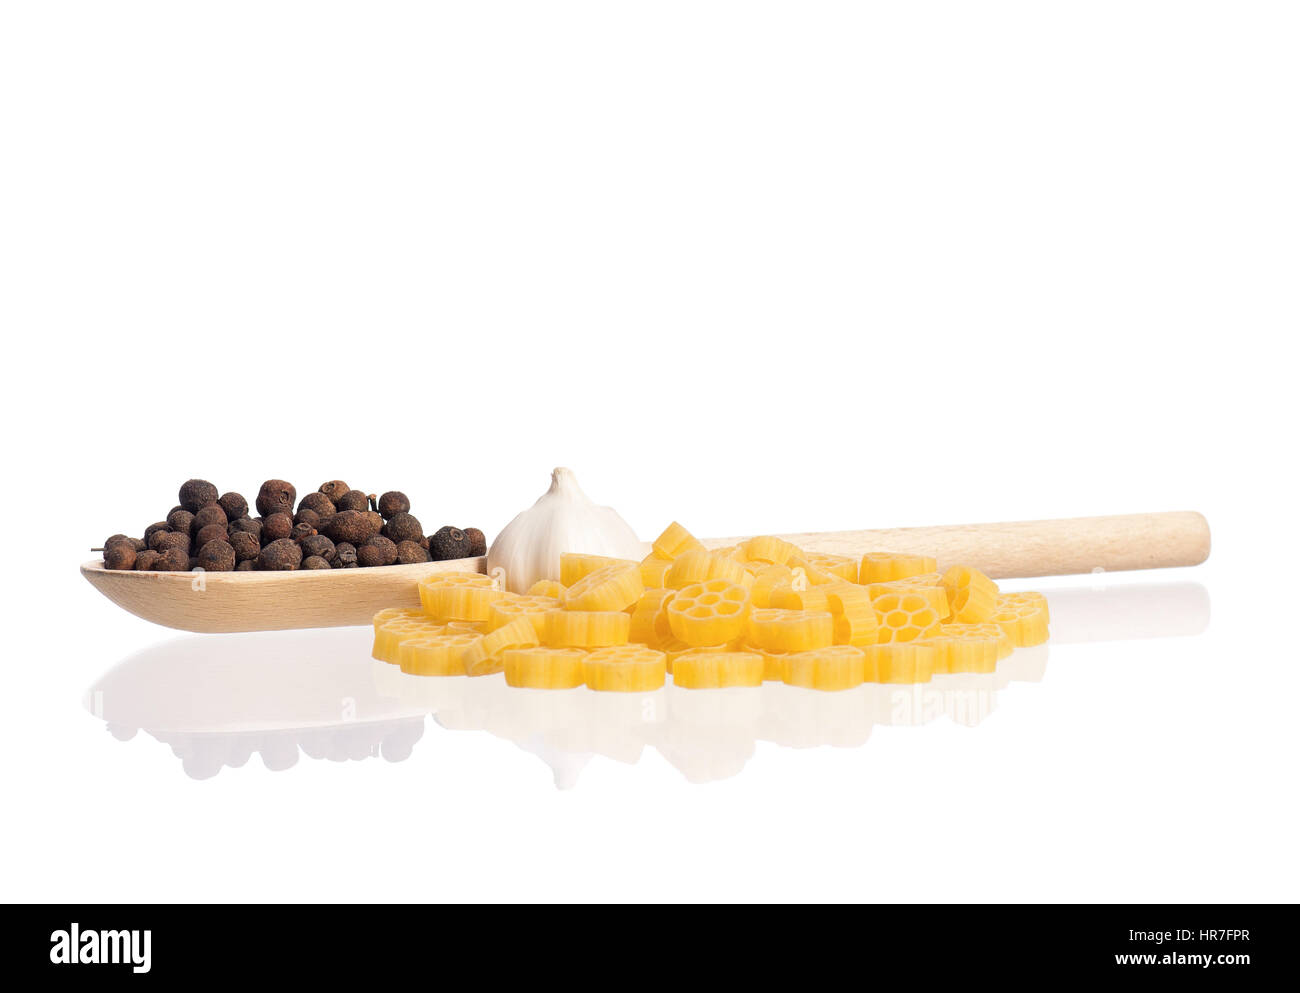 La pasta con il cucchiaio di legno e di spezie, isolati su sfondo bianco Foto Stock